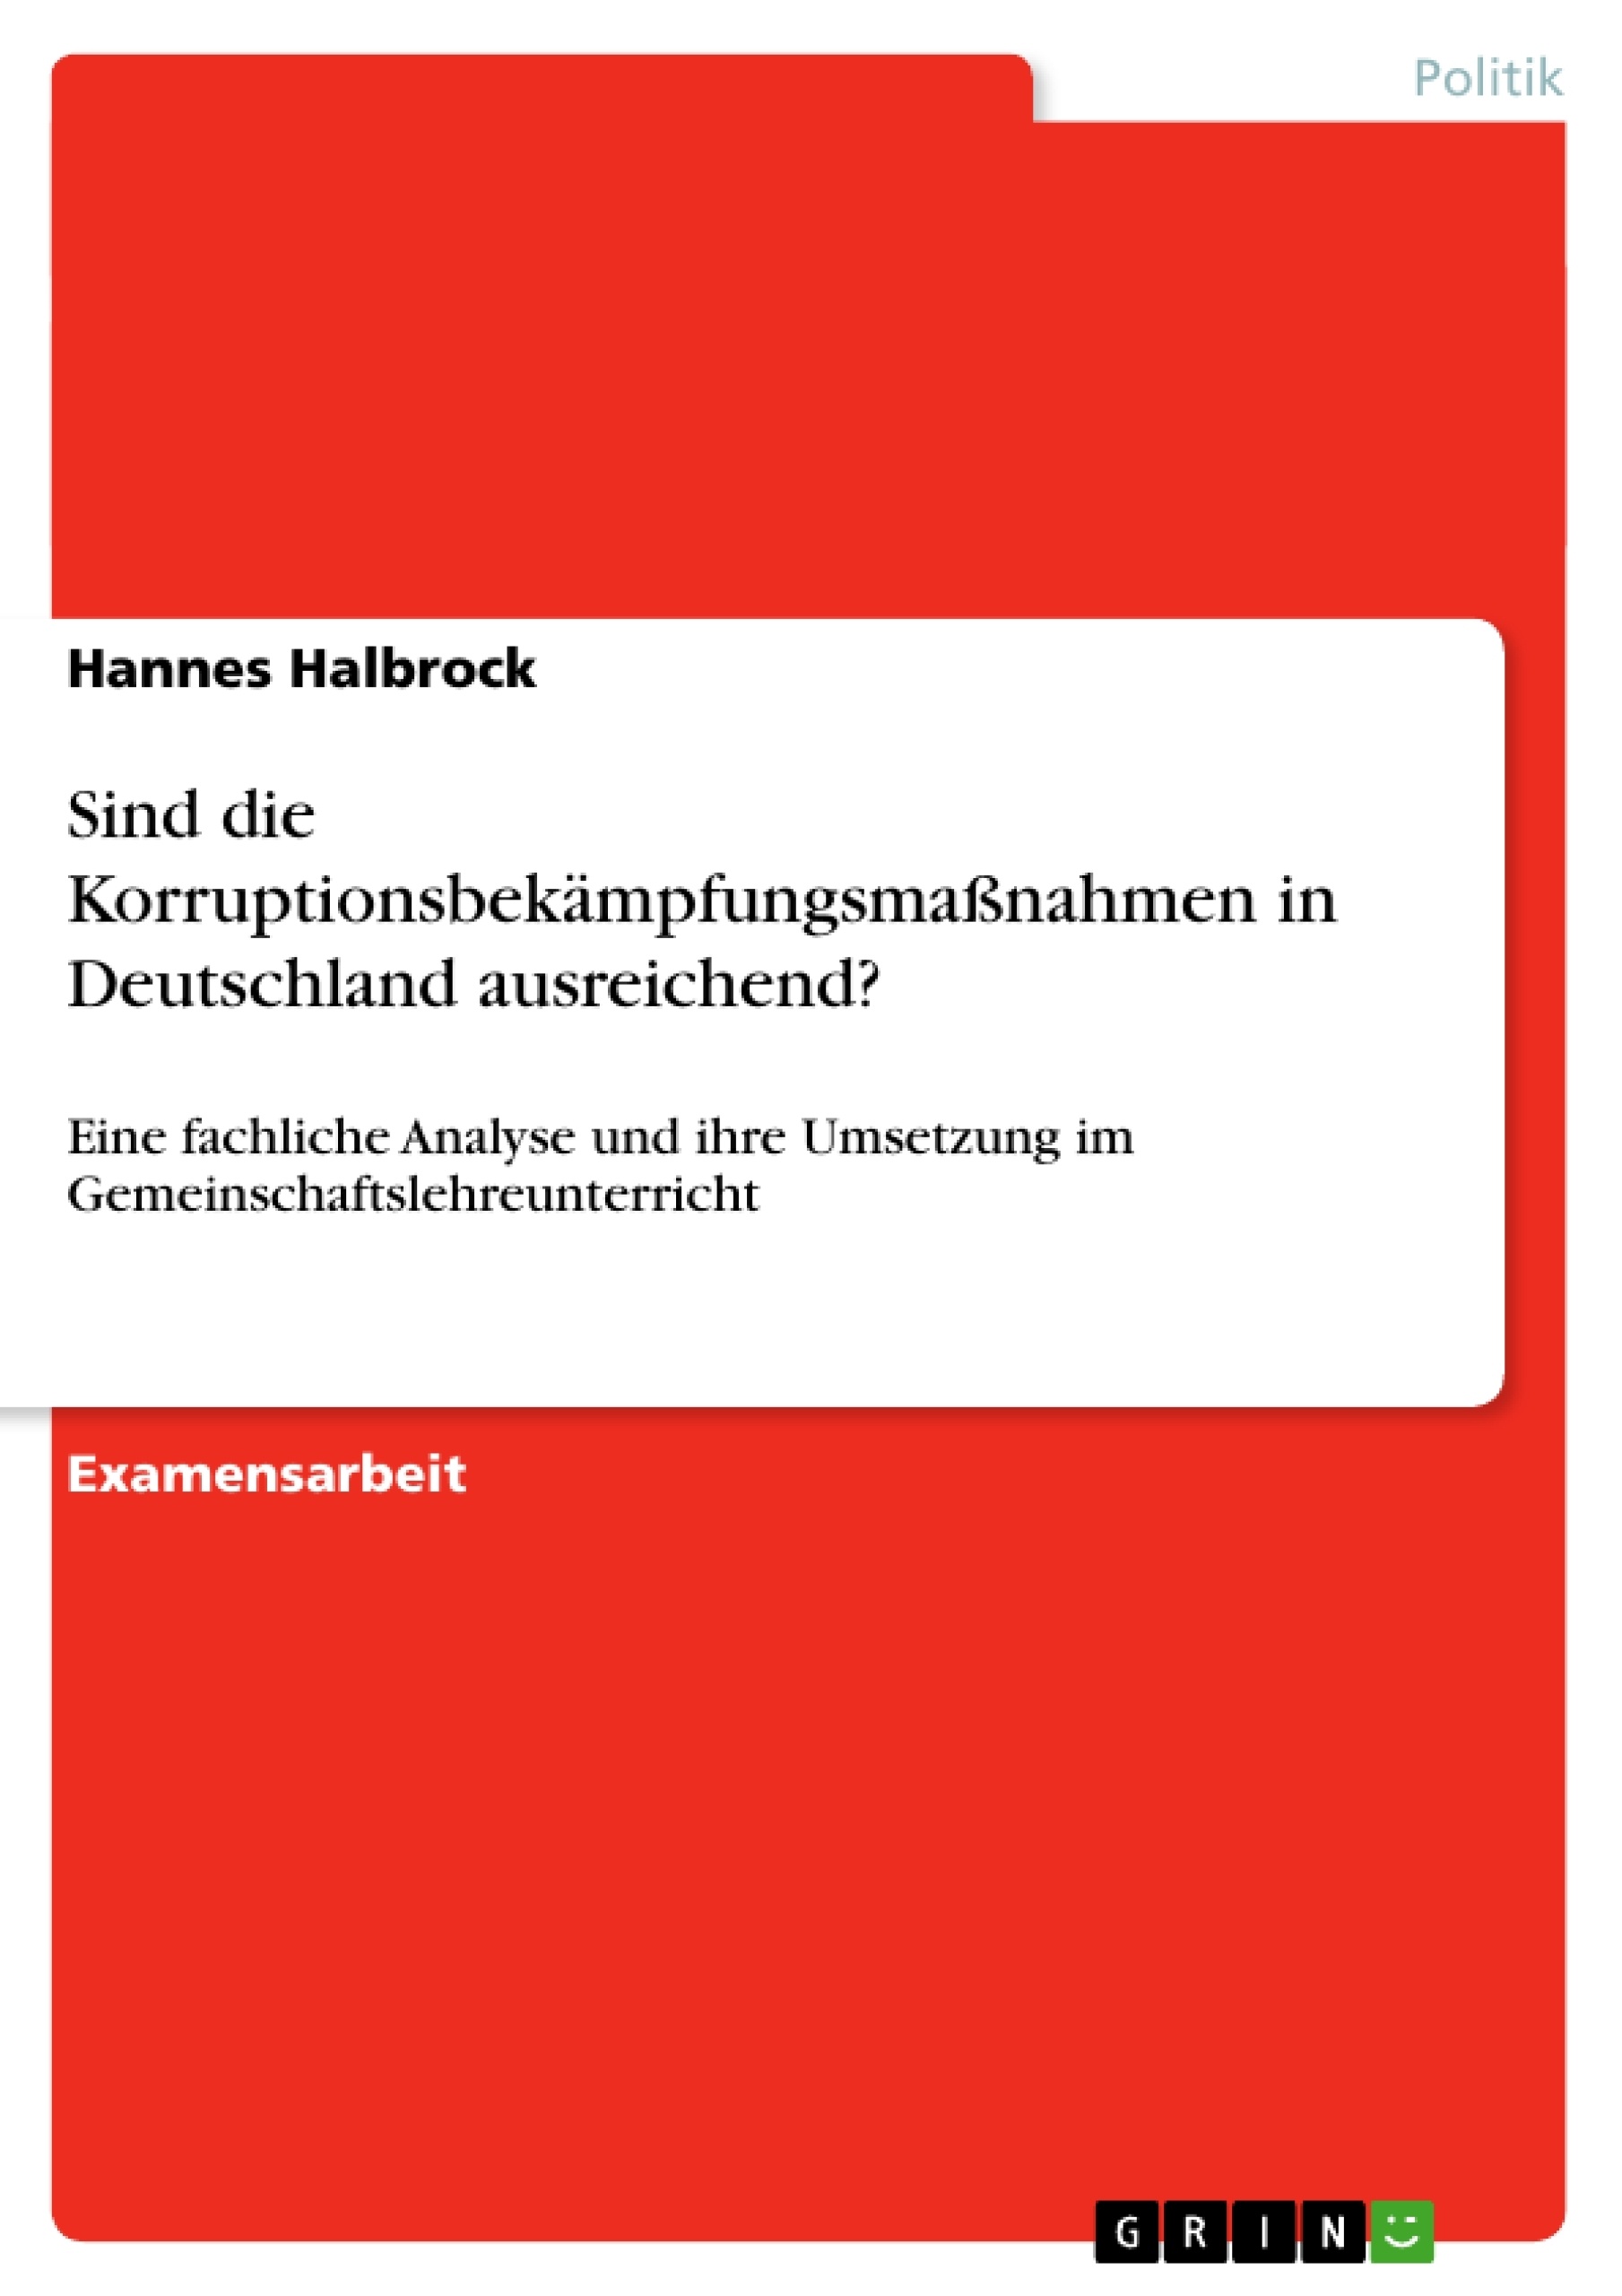 Title: Sind die Korruptionsbekämpfungsmaßnahmen in Deutschland ausreichend?